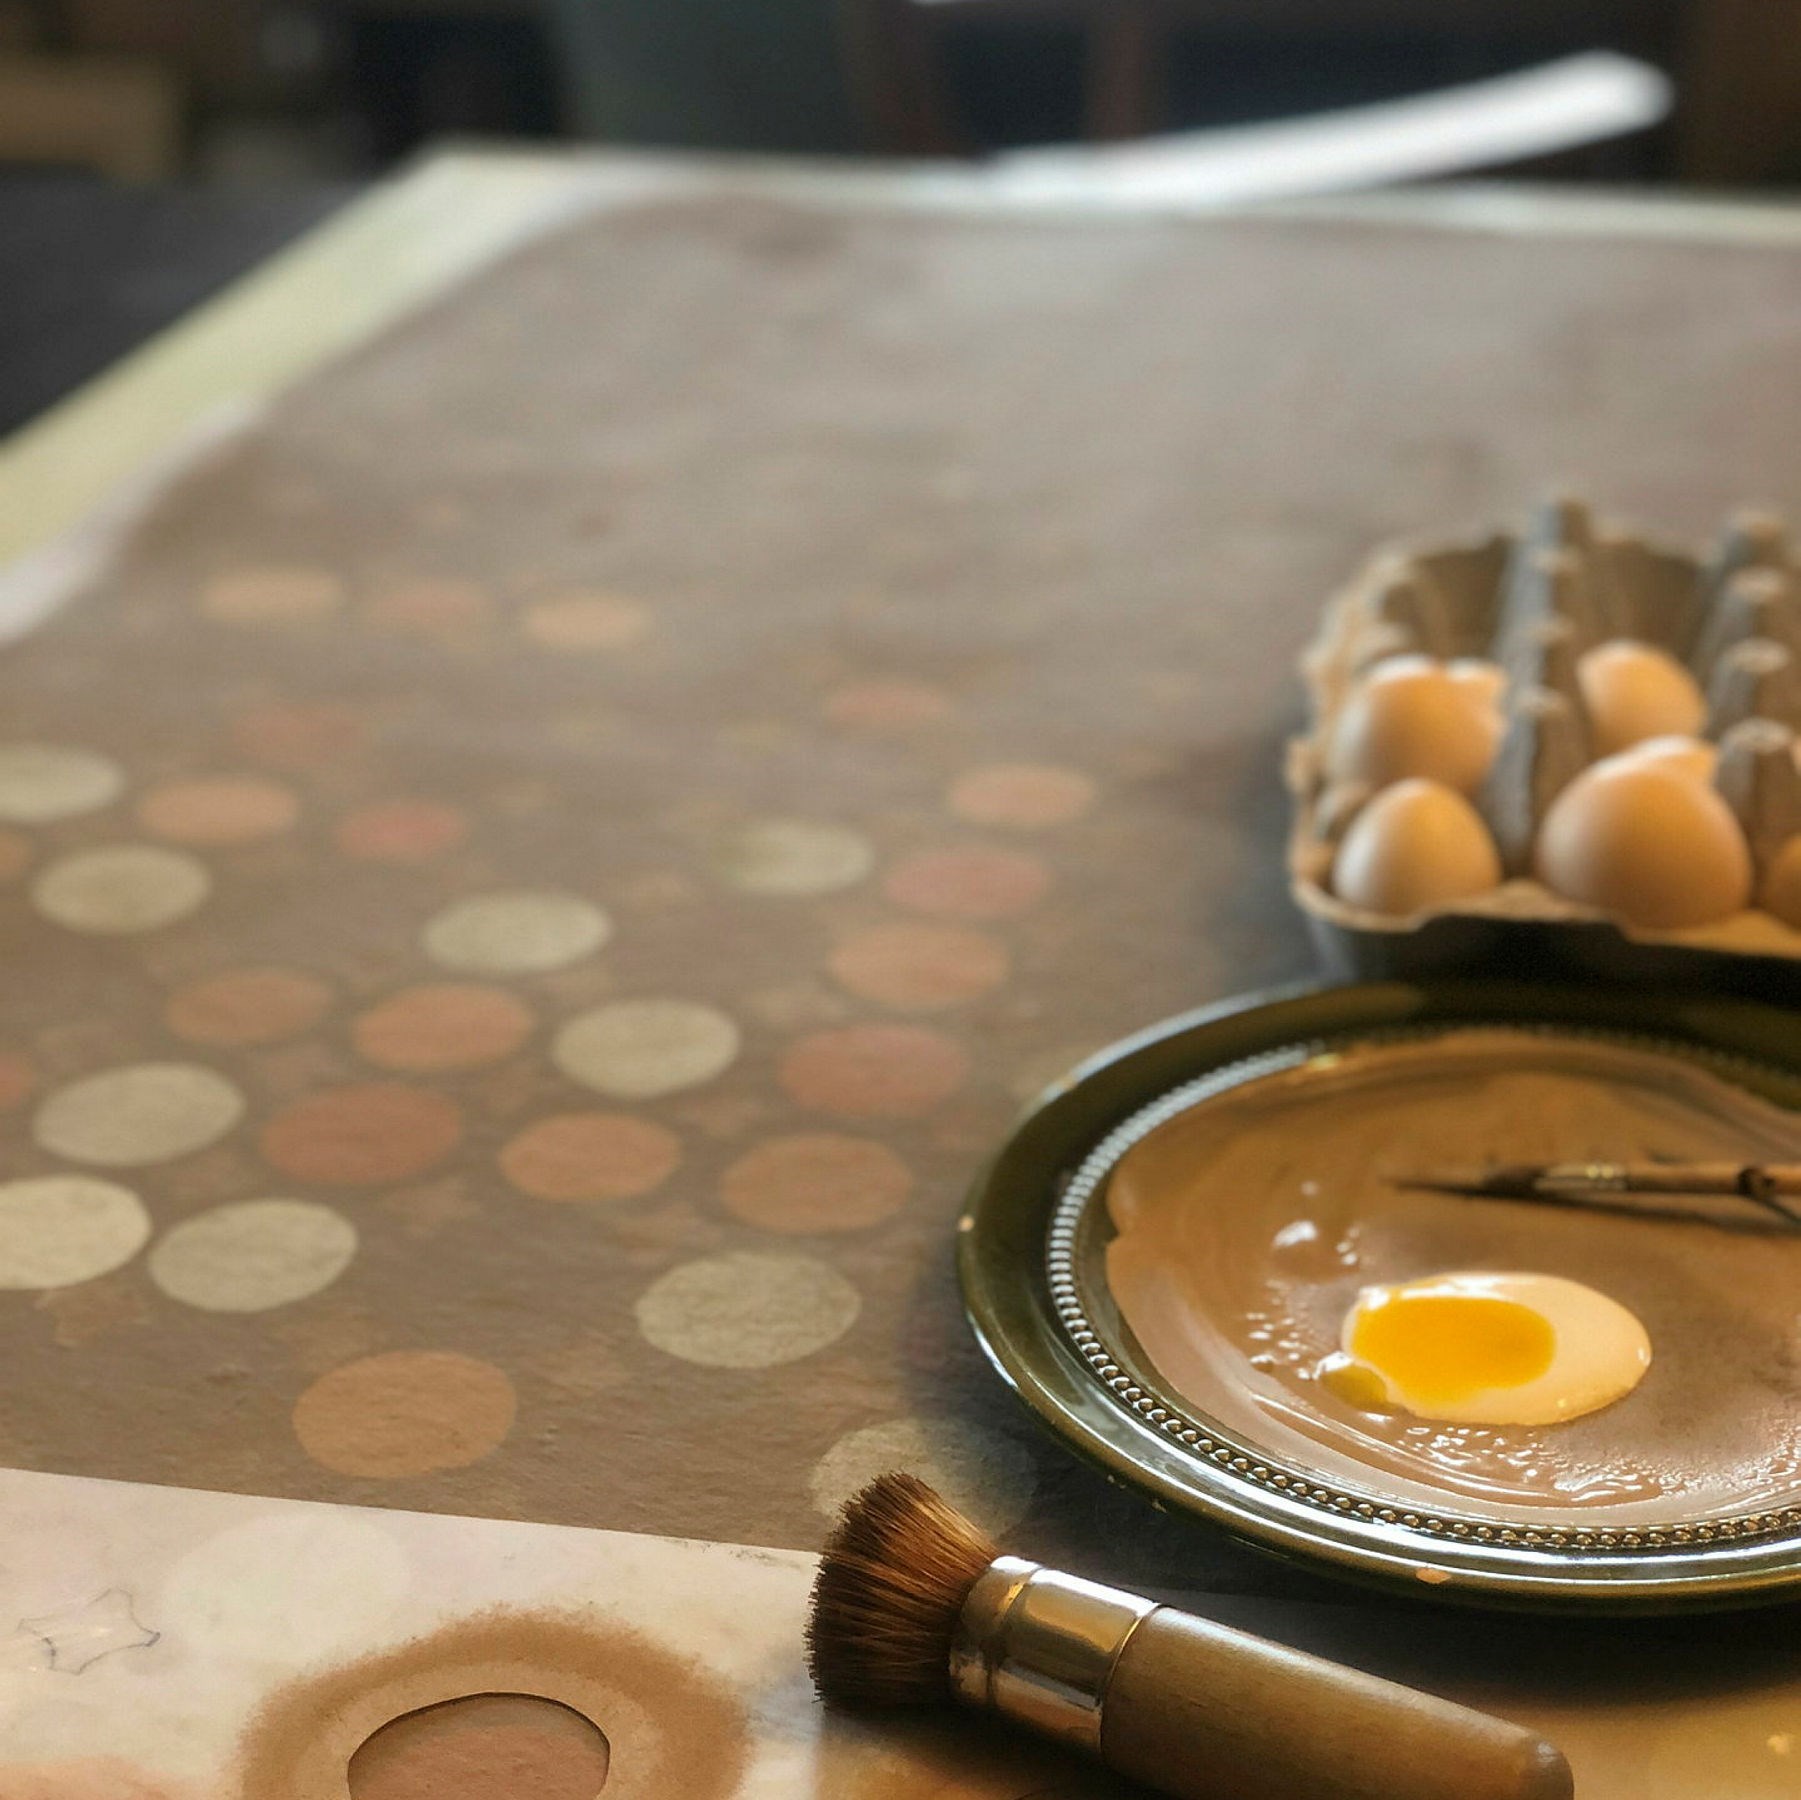 målning på ett bord med runda prickar i olika bruna och beiga kulörer och bredvid ligger ägg och en pensel